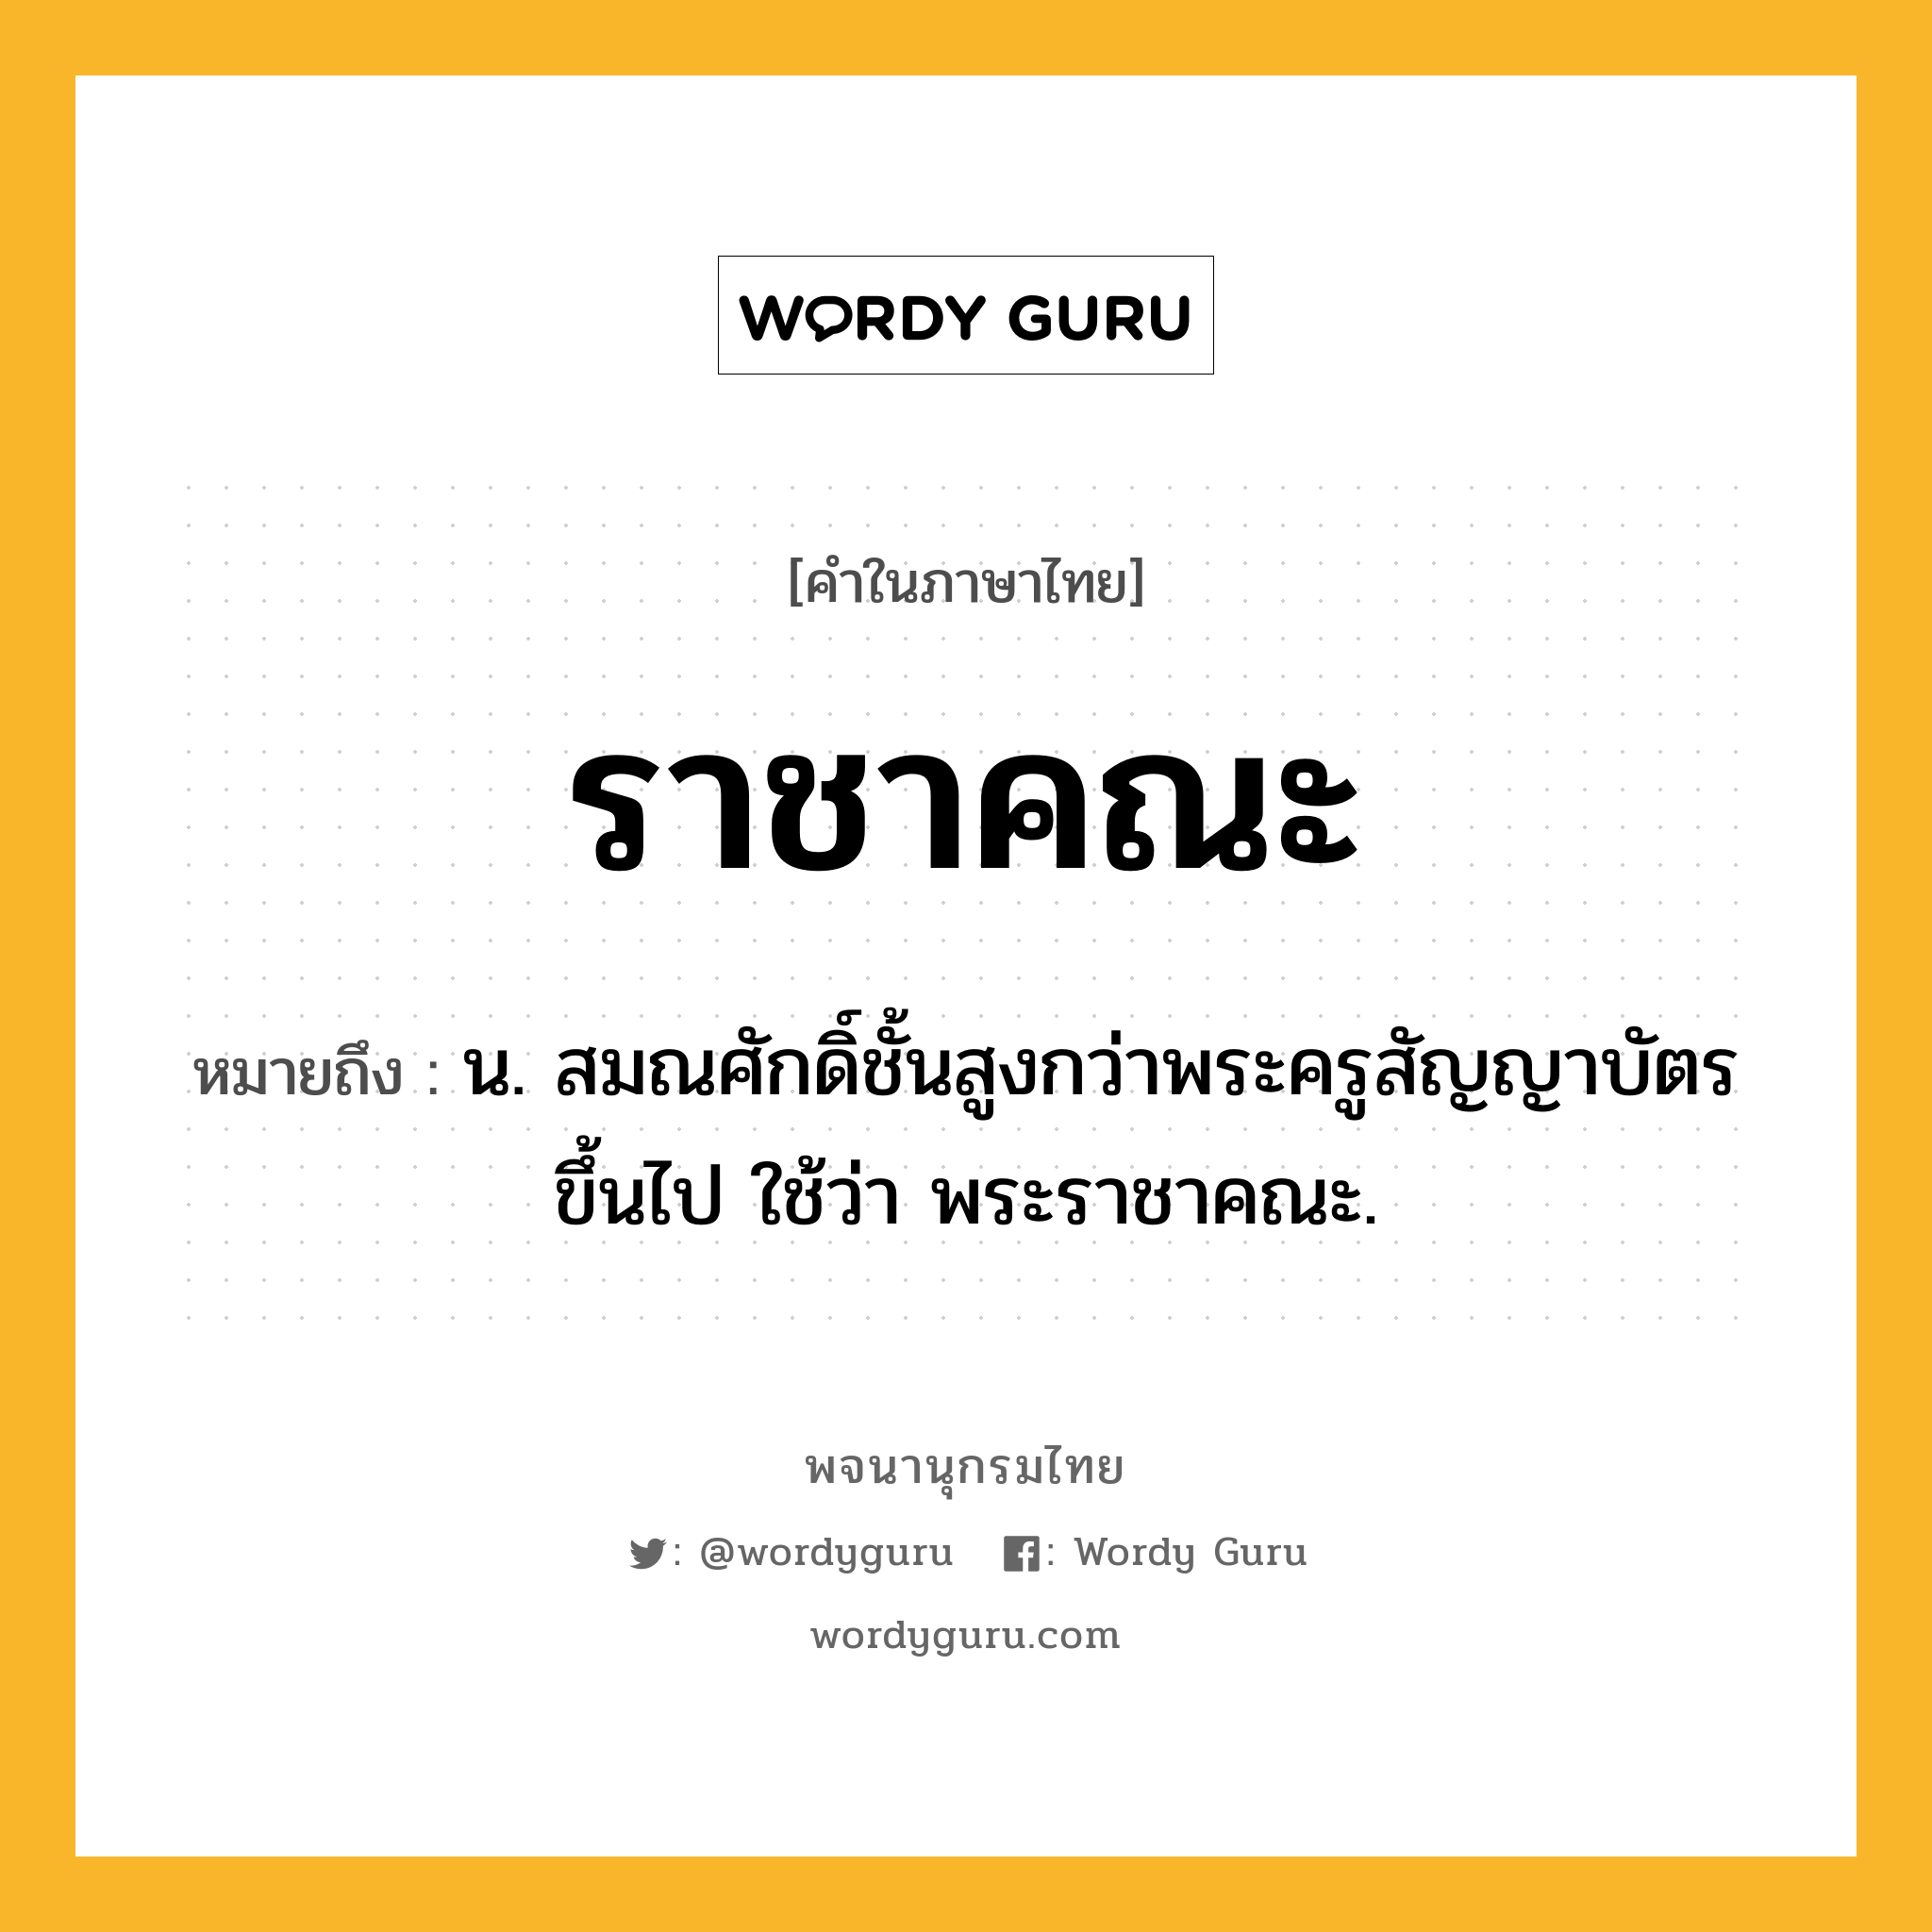 ราชาคณะ ความหมาย หมายถึงอะไร?, คำในภาษาไทย ราชาคณะ หมายถึง น. สมณศักดิ์ชั้นสูงกว่าพระครูสัญญาบัตรขึ้นไป ใช้ว่า พระราชาคณะ.